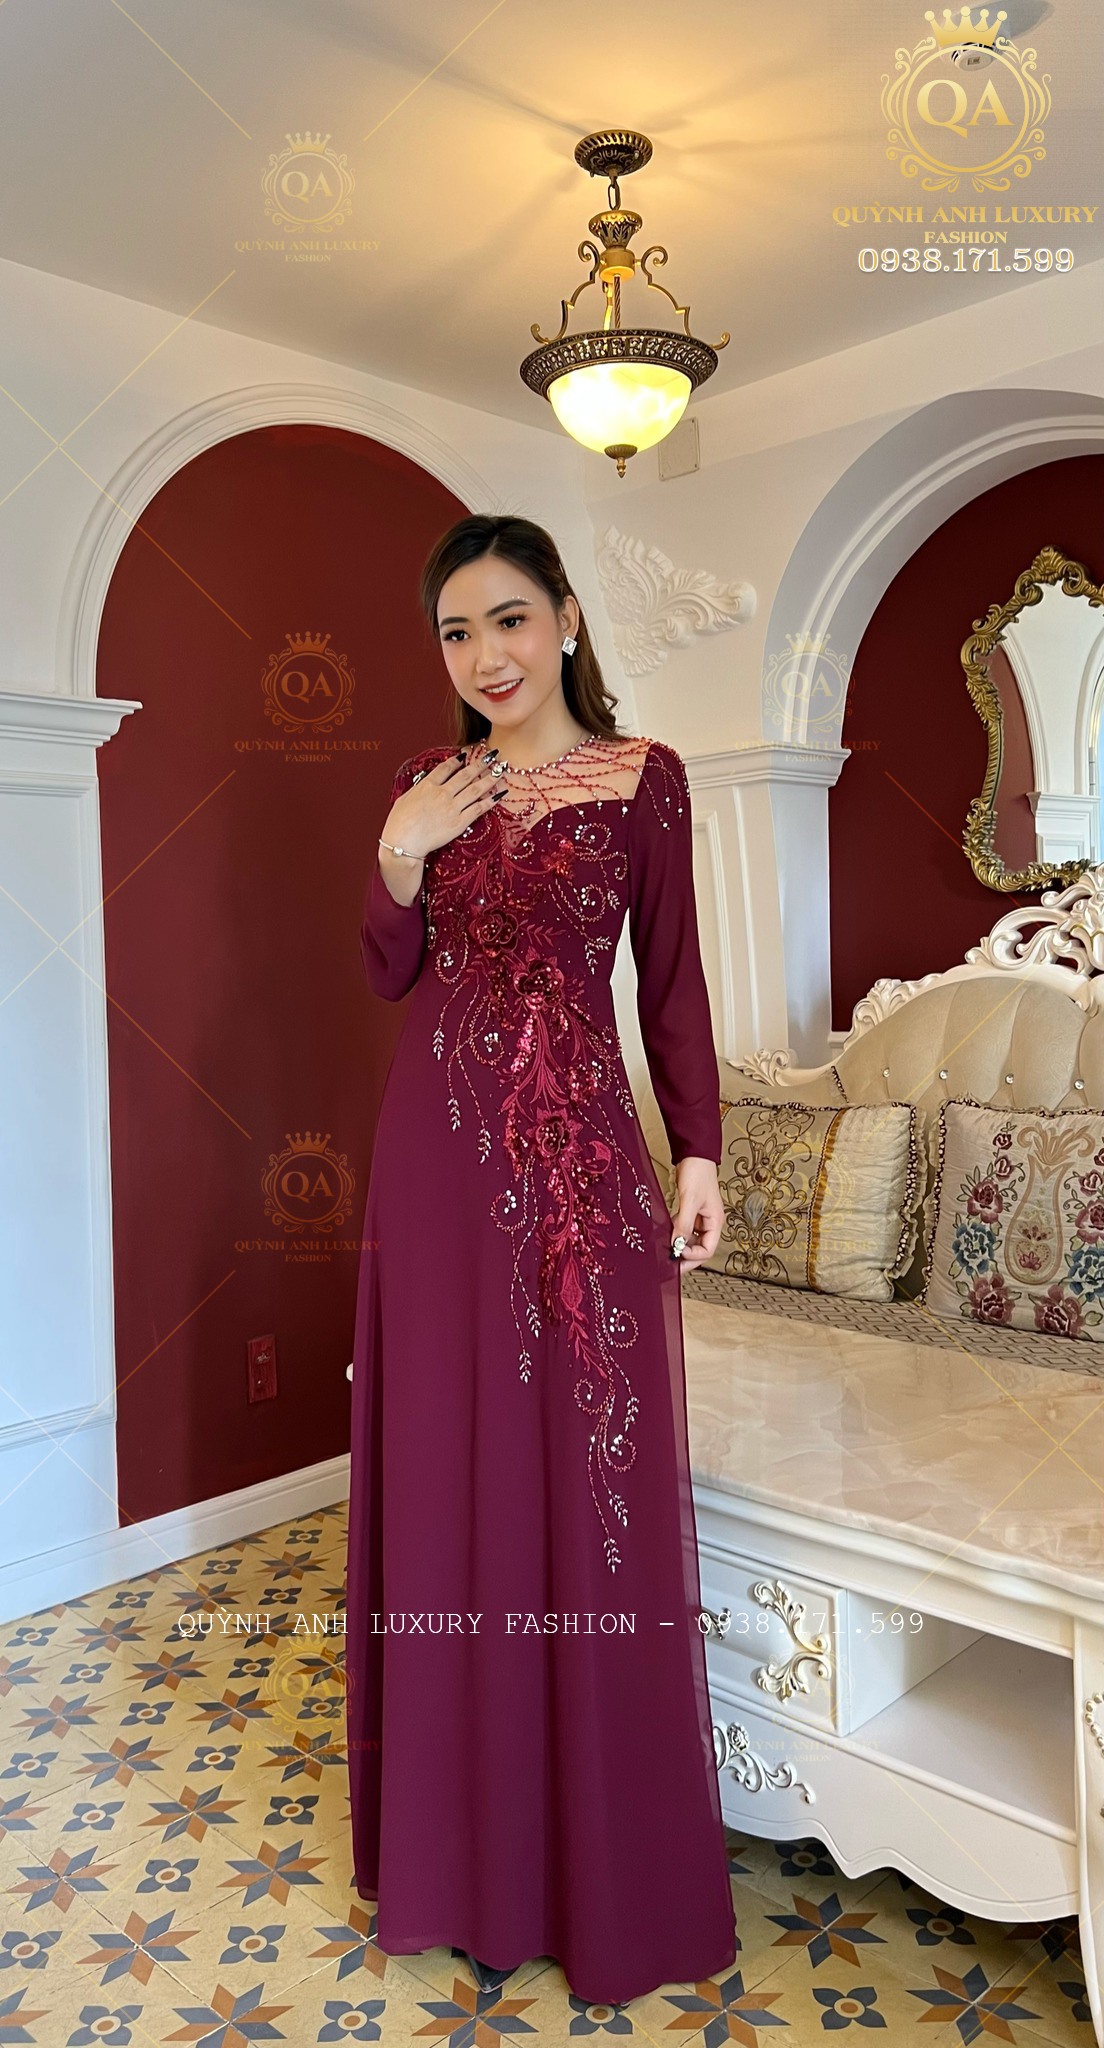 Bộ sưu tập áo dài đính đá đẹp và cao cấp nhất của Quỳnh Anh Luxury Fashion